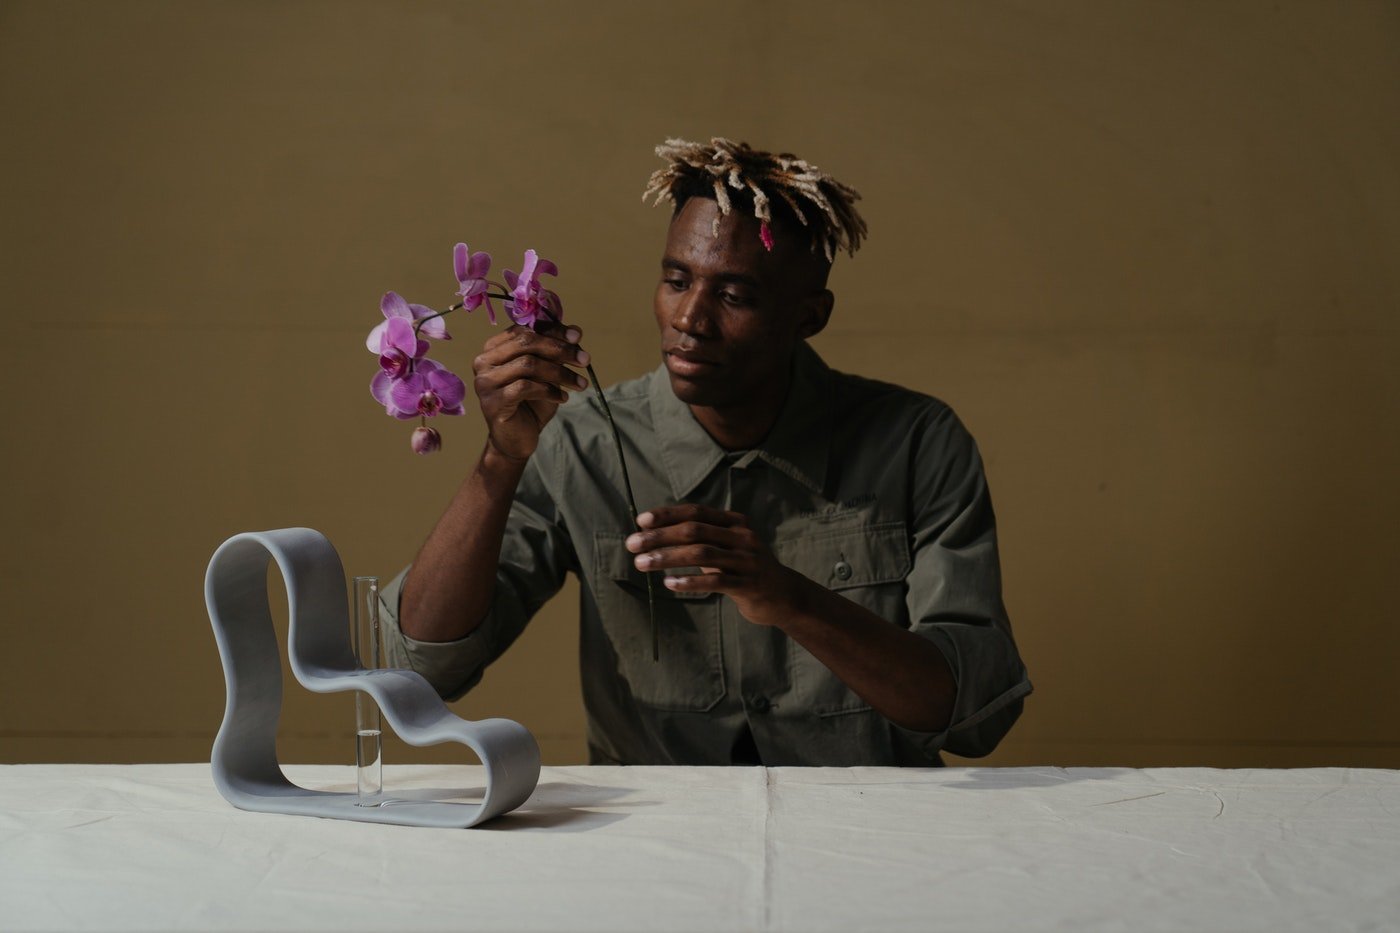 Mann arrangiert Orchidee - wie man einen Lebenslauf für einen Job als Florist schreibt